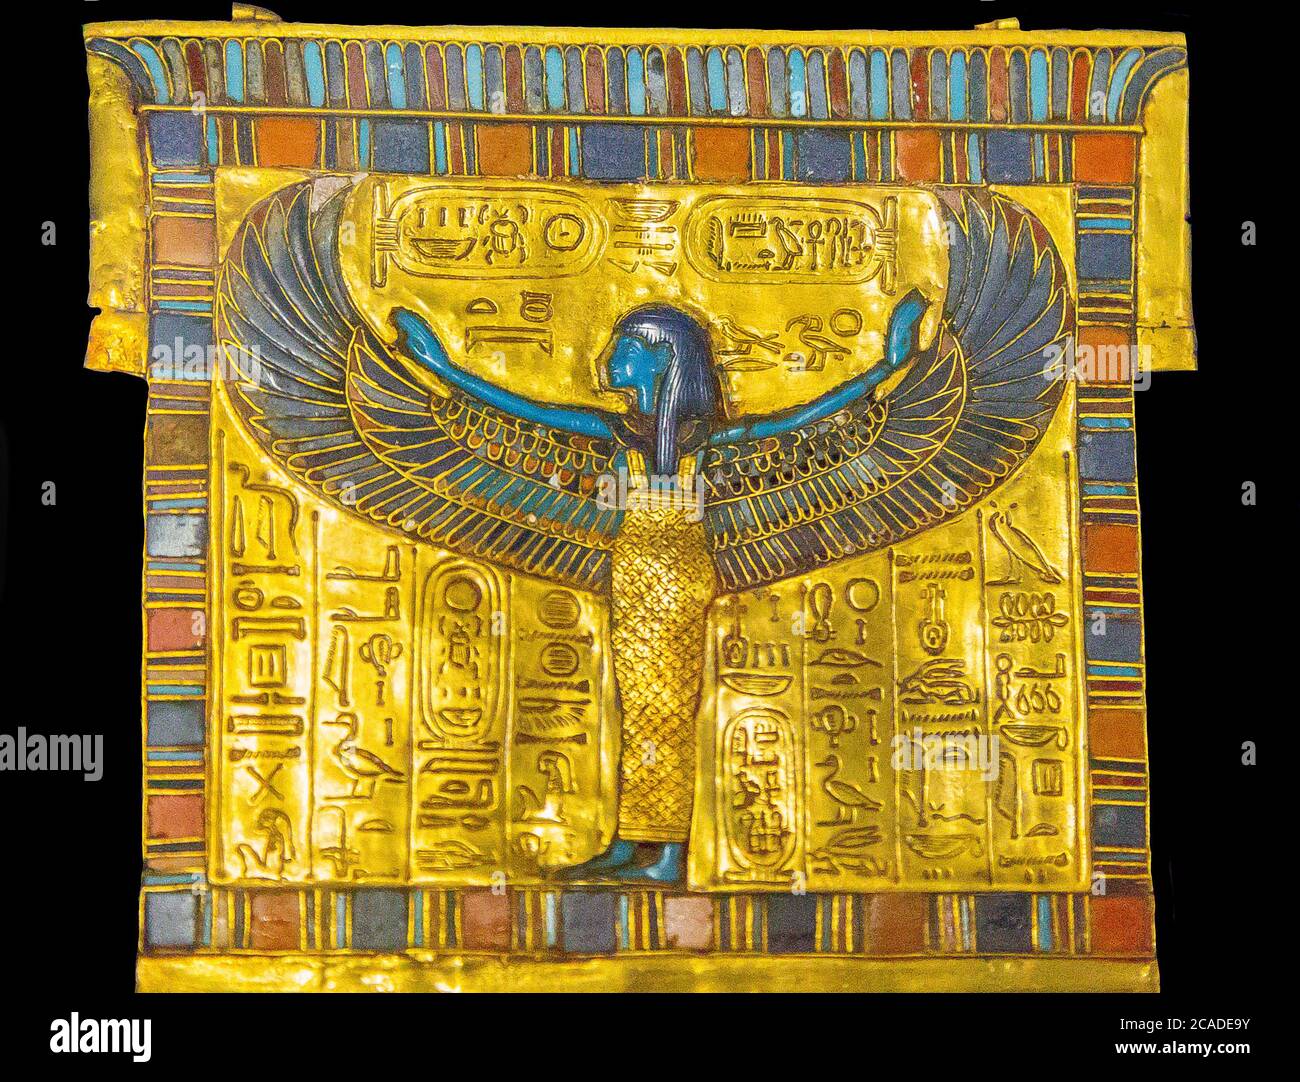 Ägypten, Kairo, Tutanchamon-Schmuck aus seinem Grab in Luxor : Ein Bruststück in Form eines Pylons, das die geflügelte Göttin Nut zeigt. Stockfoto